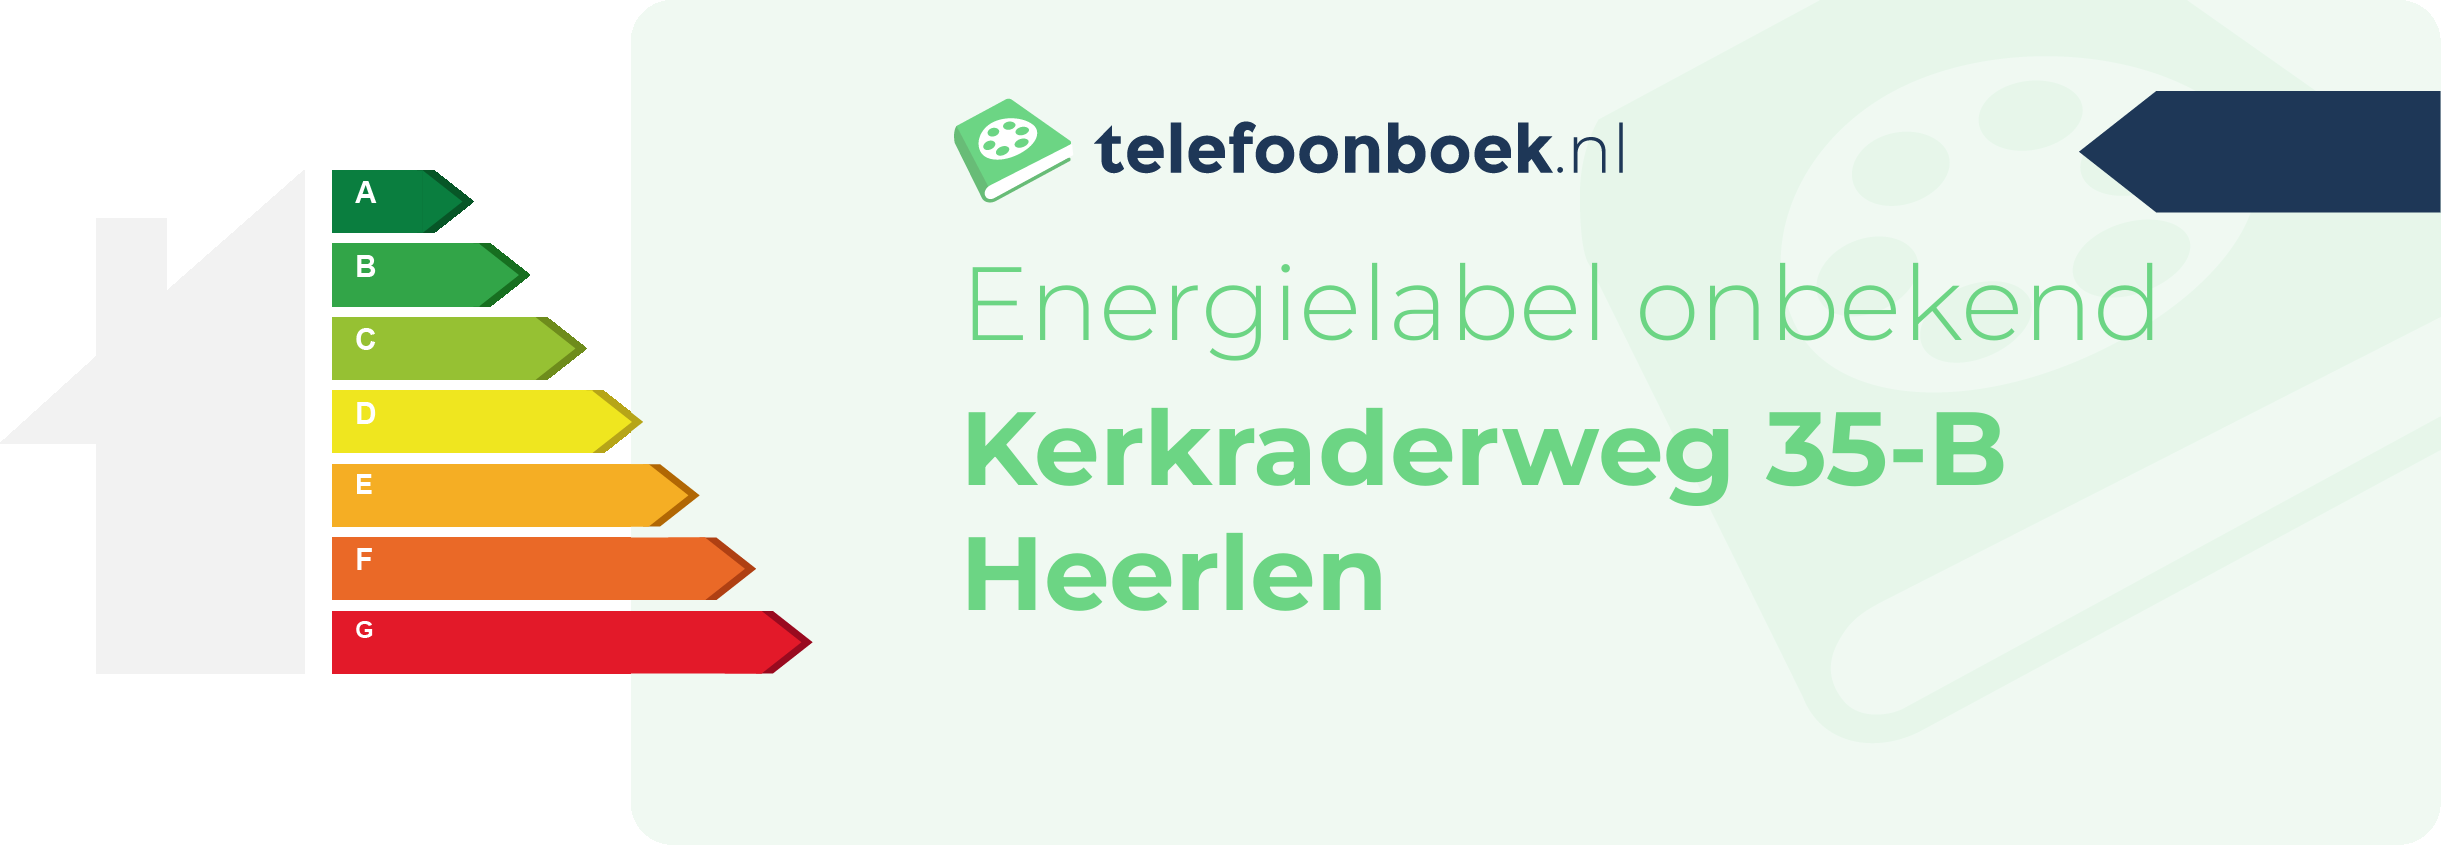 Energielabel Kerkraderweg 35-B Heerlen